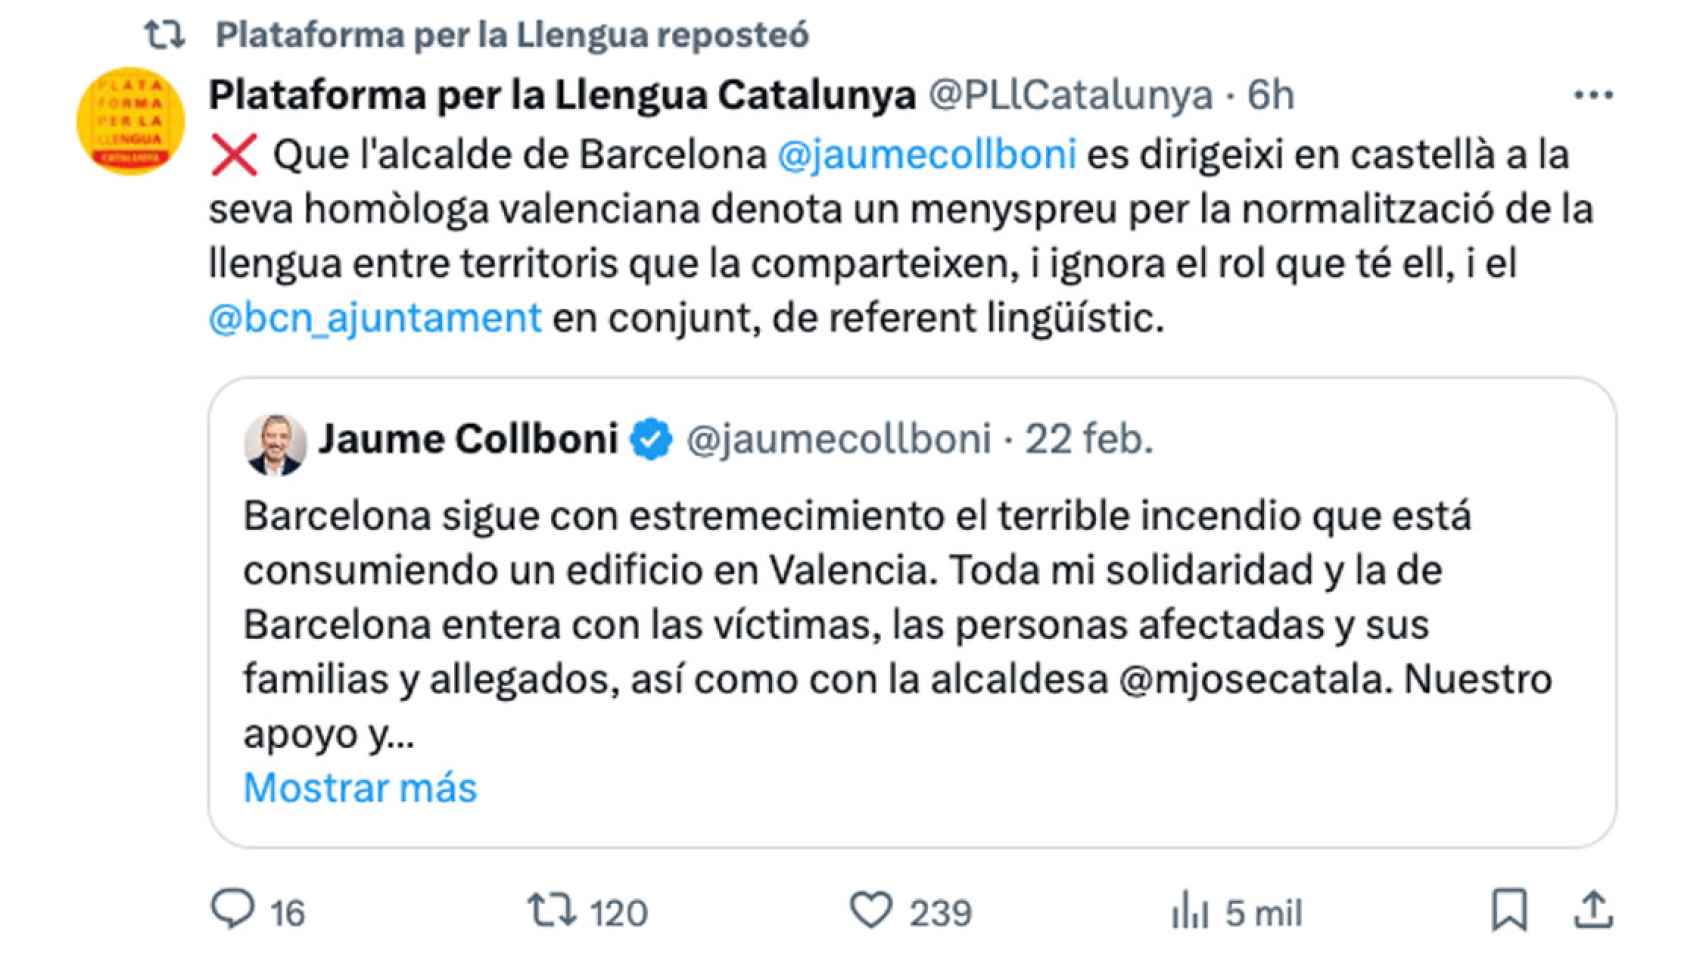 Plataforma per la Llengua, criticando que Collboni expresara sus condolencias por el incendio de Valencia en castellano